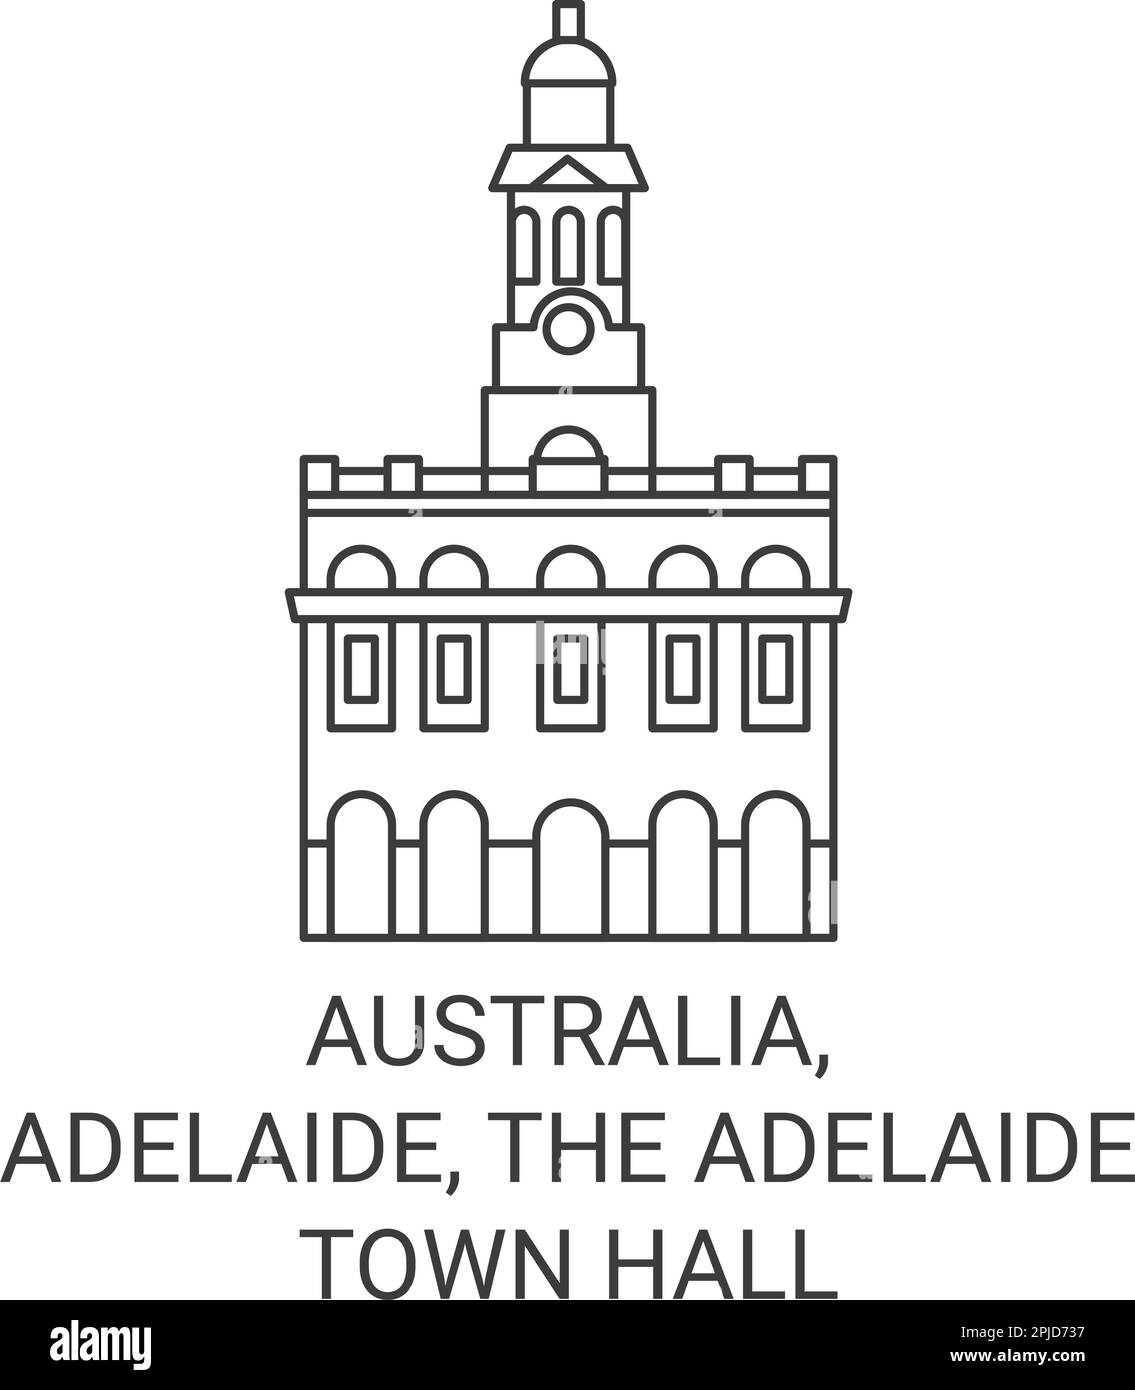 Australia, Adelaide, The Adelaide Town Hall travel landmark vector illustration Stock Vector